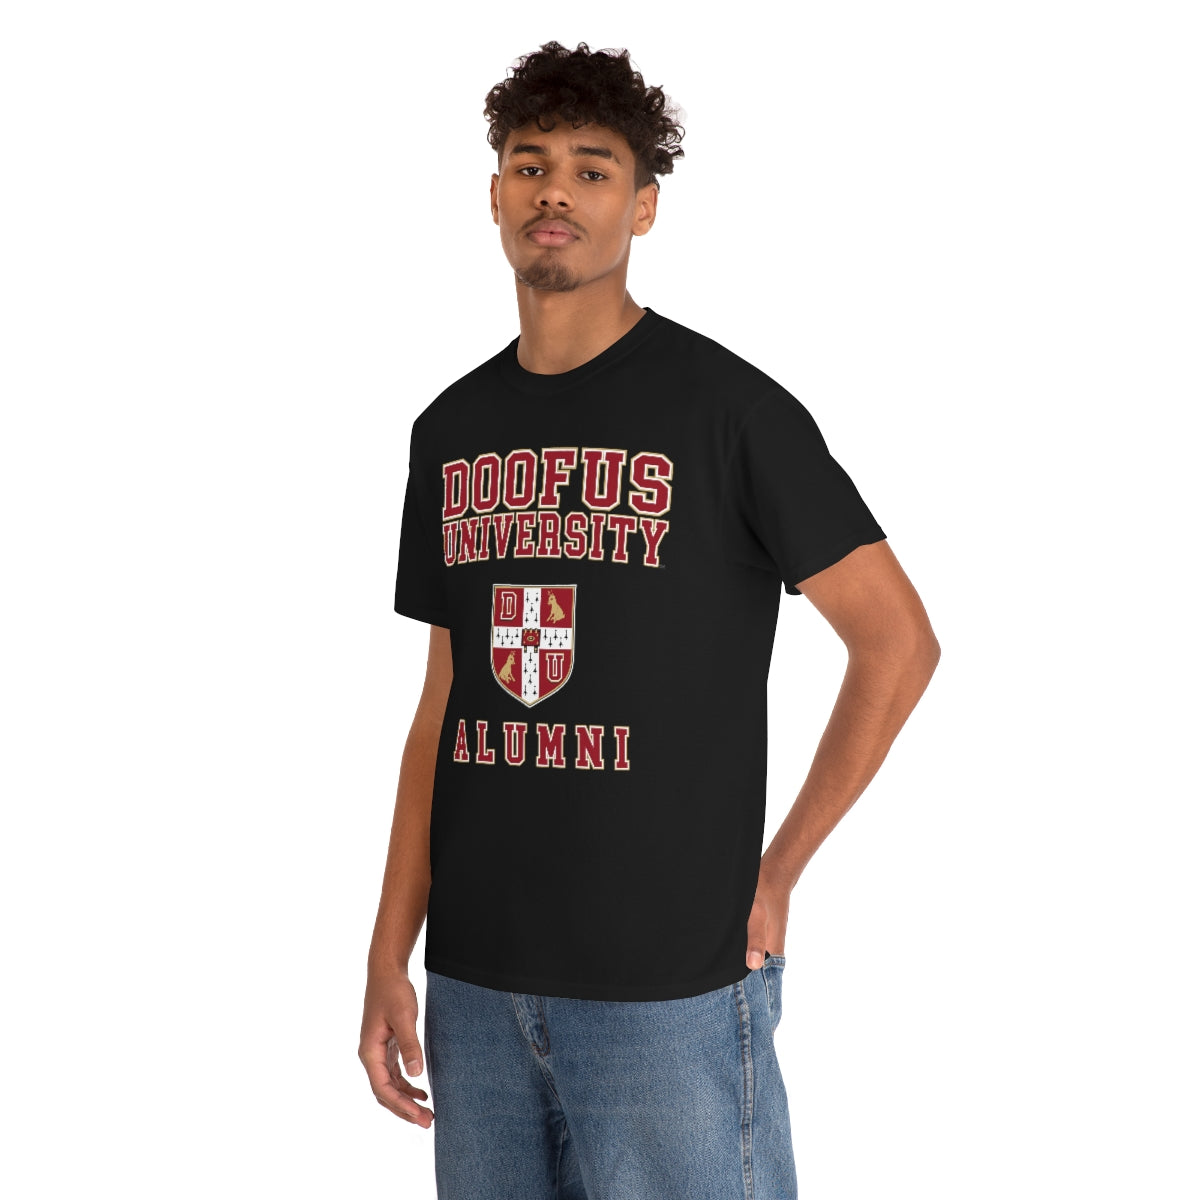 Doofus University™ Alumni Unisex Funny Gift Idea Short Sleeve T Shirt